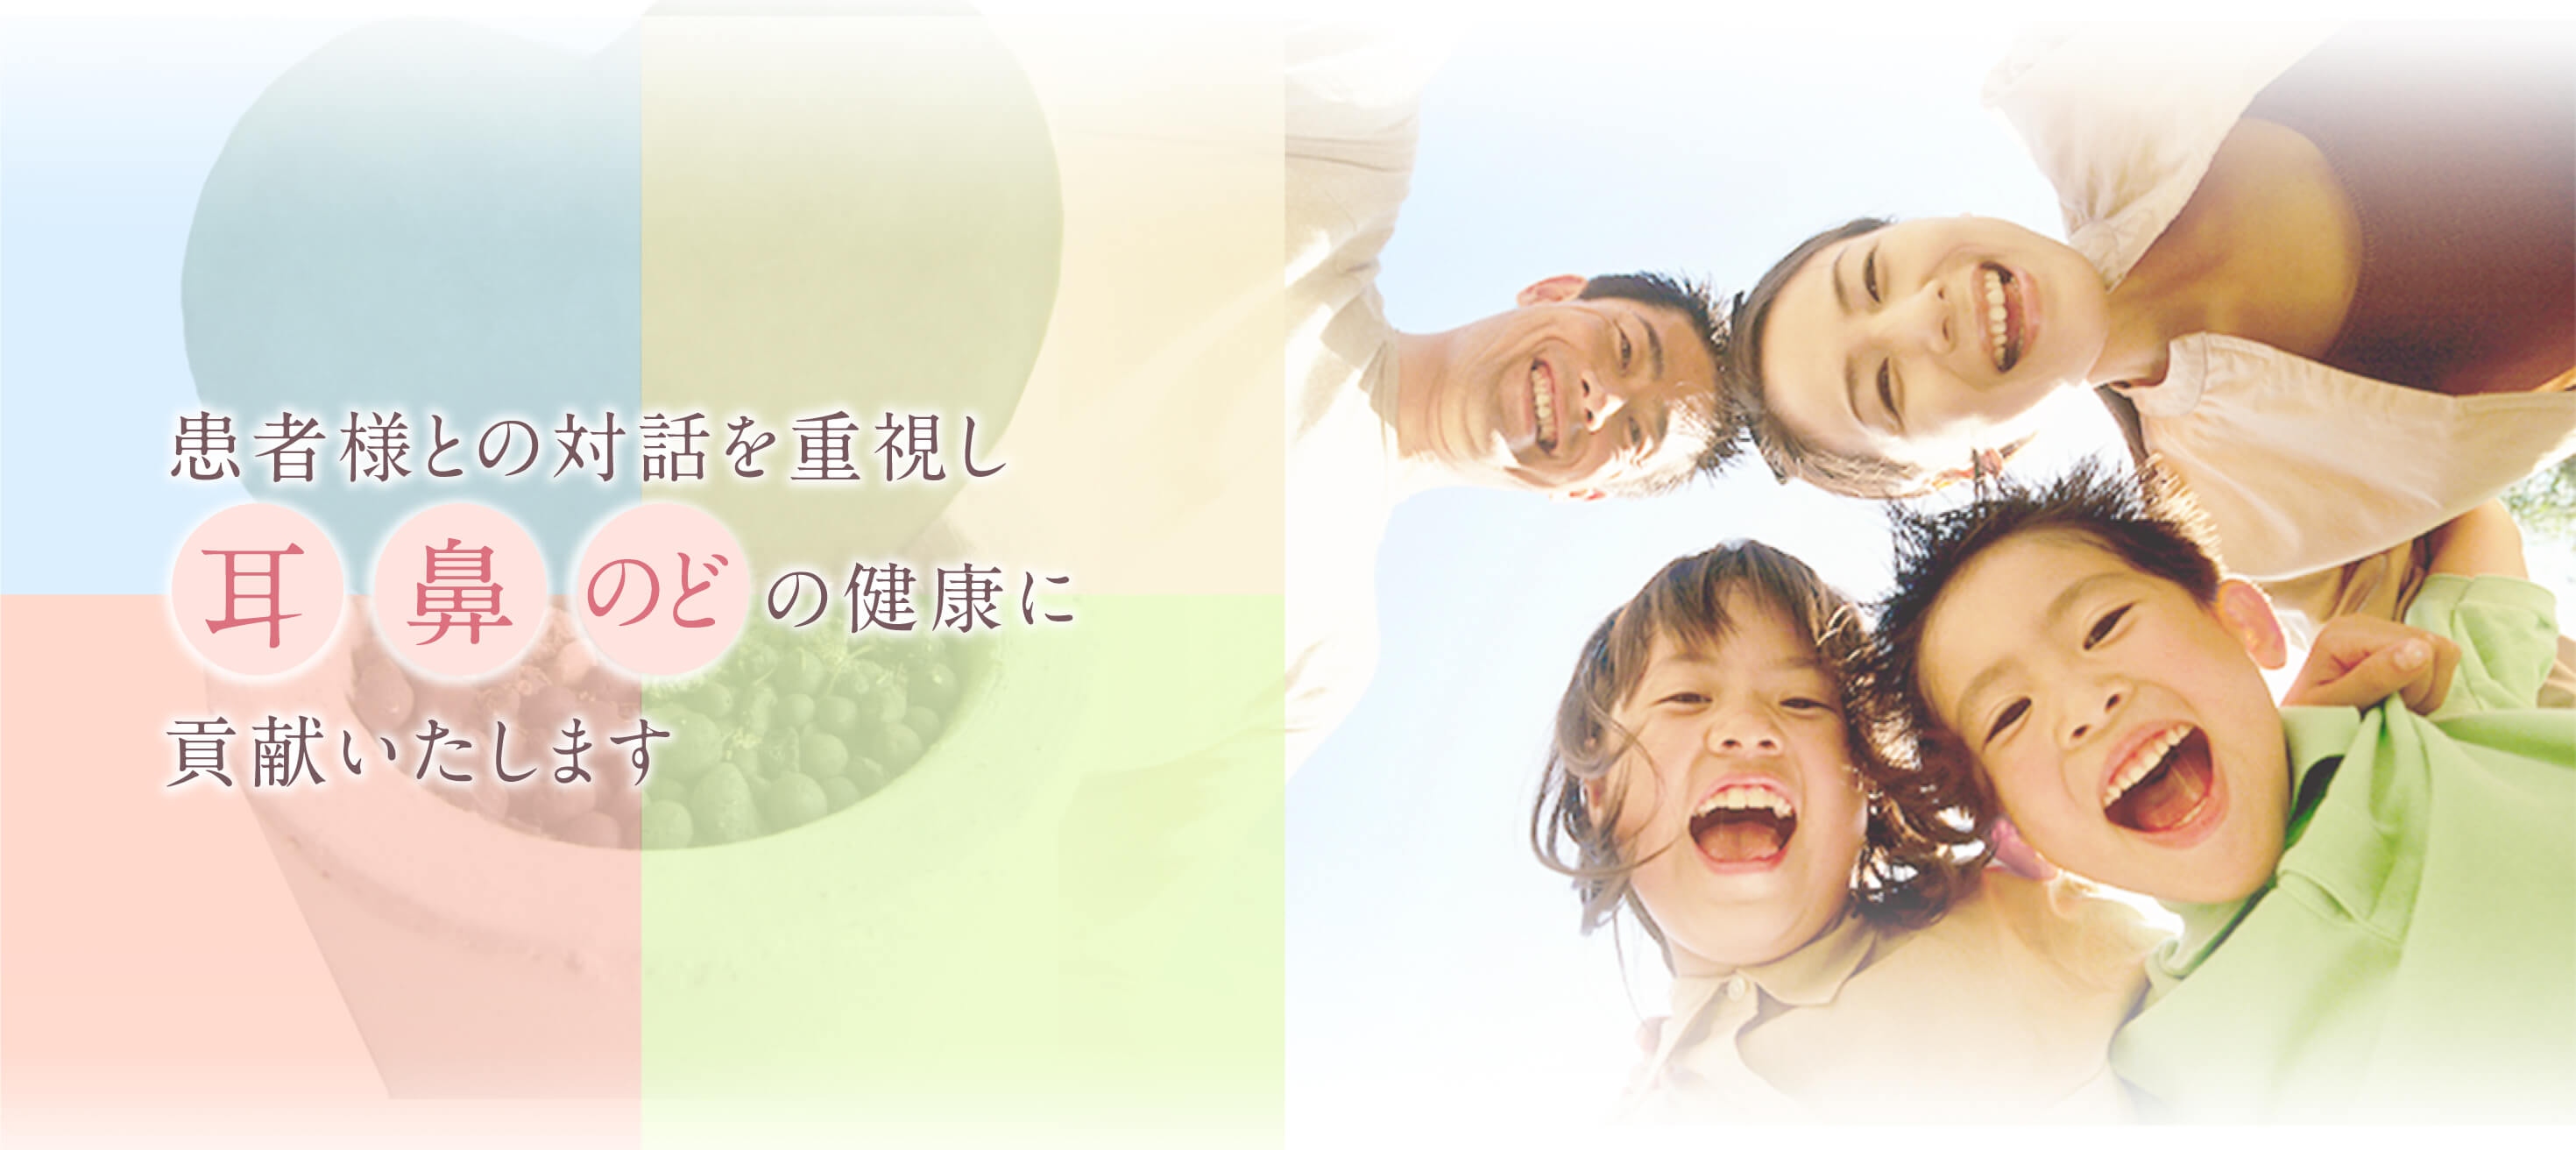 患者様との対話を重視し、耳・鼻・のどの健康に貢献します。大阪市西区・地下鉄「西長堀」駅至近・耳鼻科『めぐみ耳鼻咽喉科・アレルギー科』です。